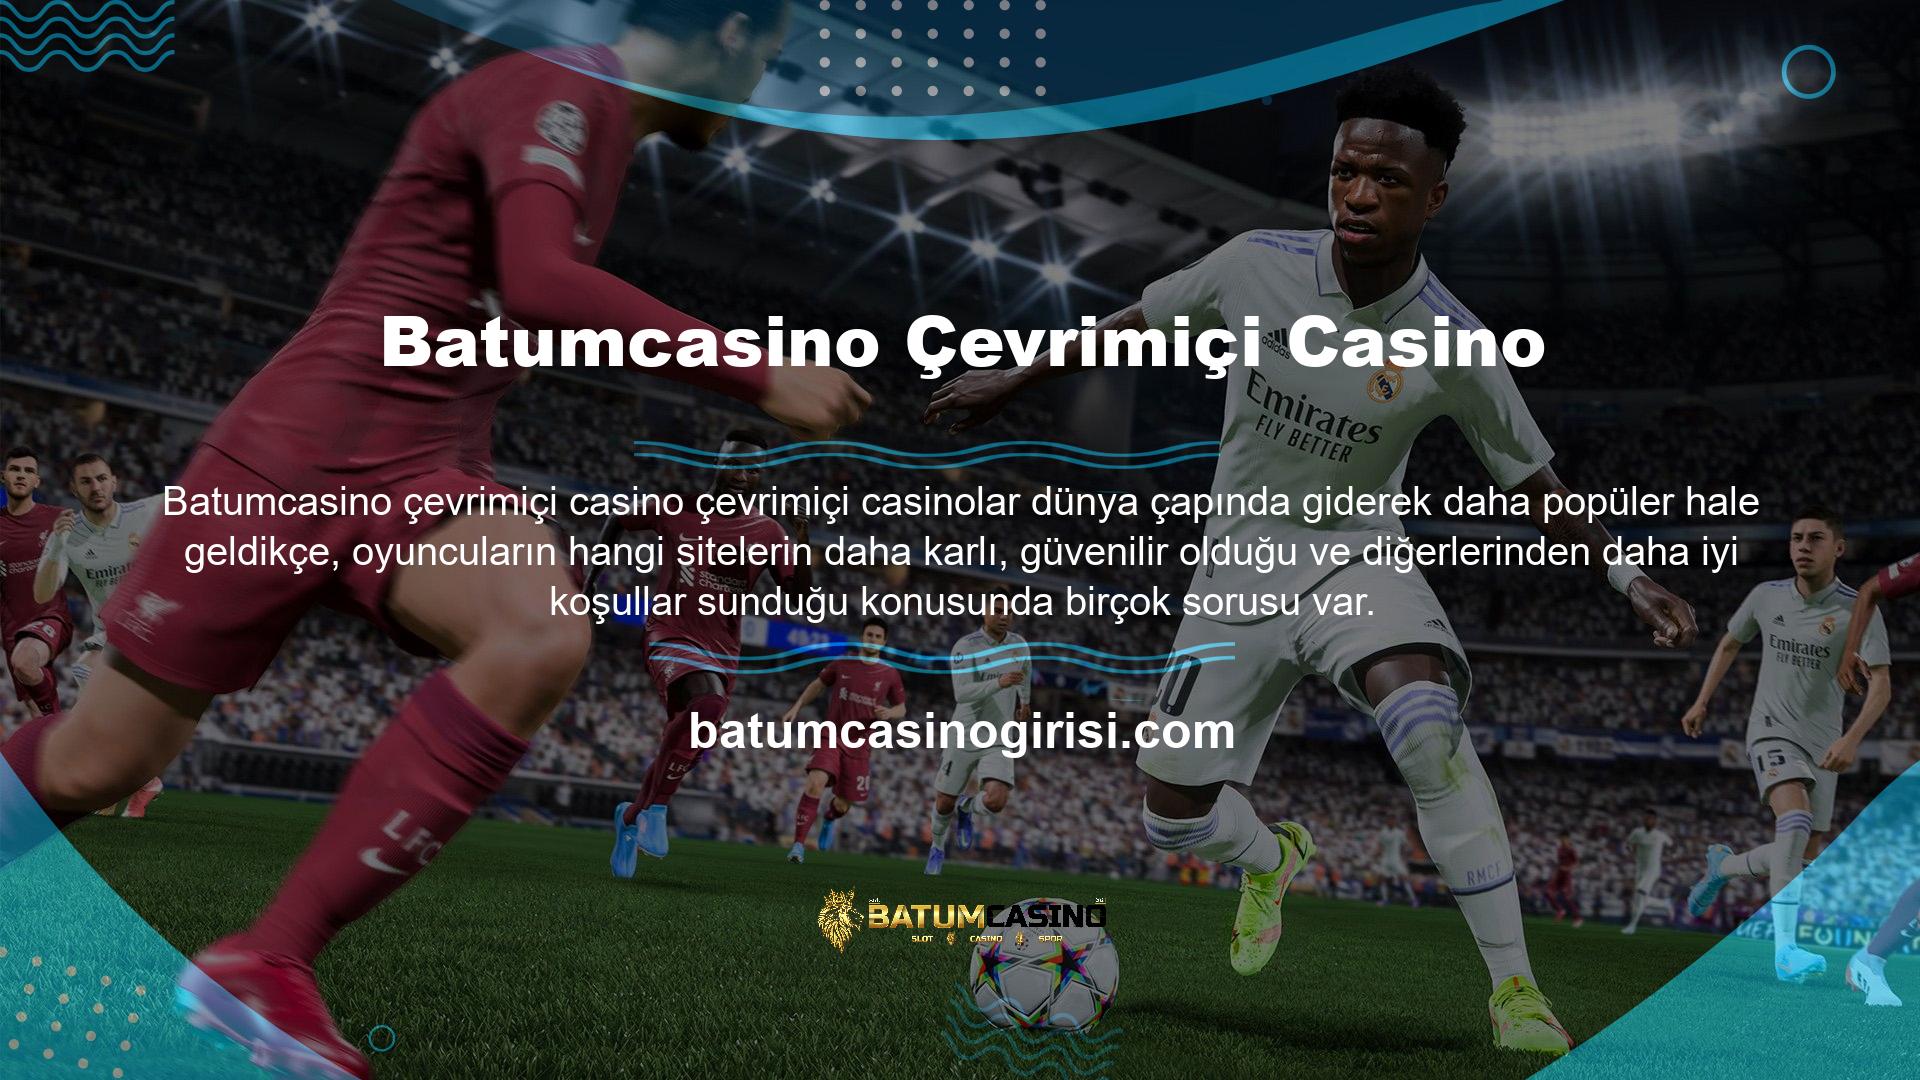 Batumcasino online casino sitesinin büyümesinin bahis oynayan kullanıcı sayısıyla orantılı olduğu göz önüne alındığında bu konular çevrimiçi bahis sitelerinde bahisçilerin kafasını karıştırabilir